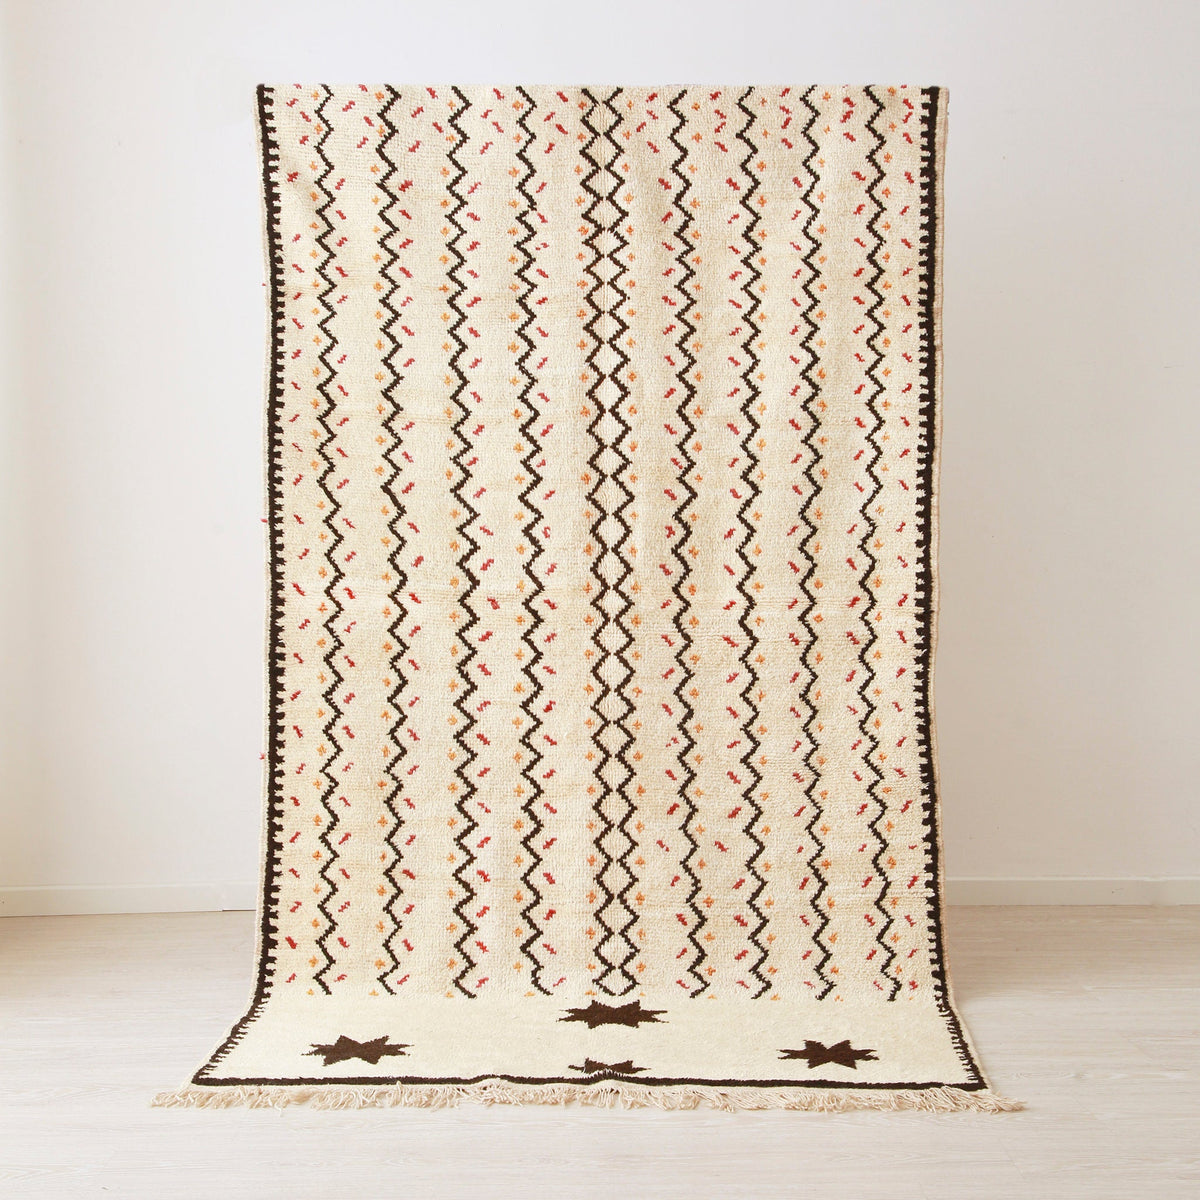 tappeto stile azilal appeso realizzato su base bianche con linee a zig zag nere e quattro stelle nere. Ai lati delle linee spezzate delle piccole linee arancioni e rosse